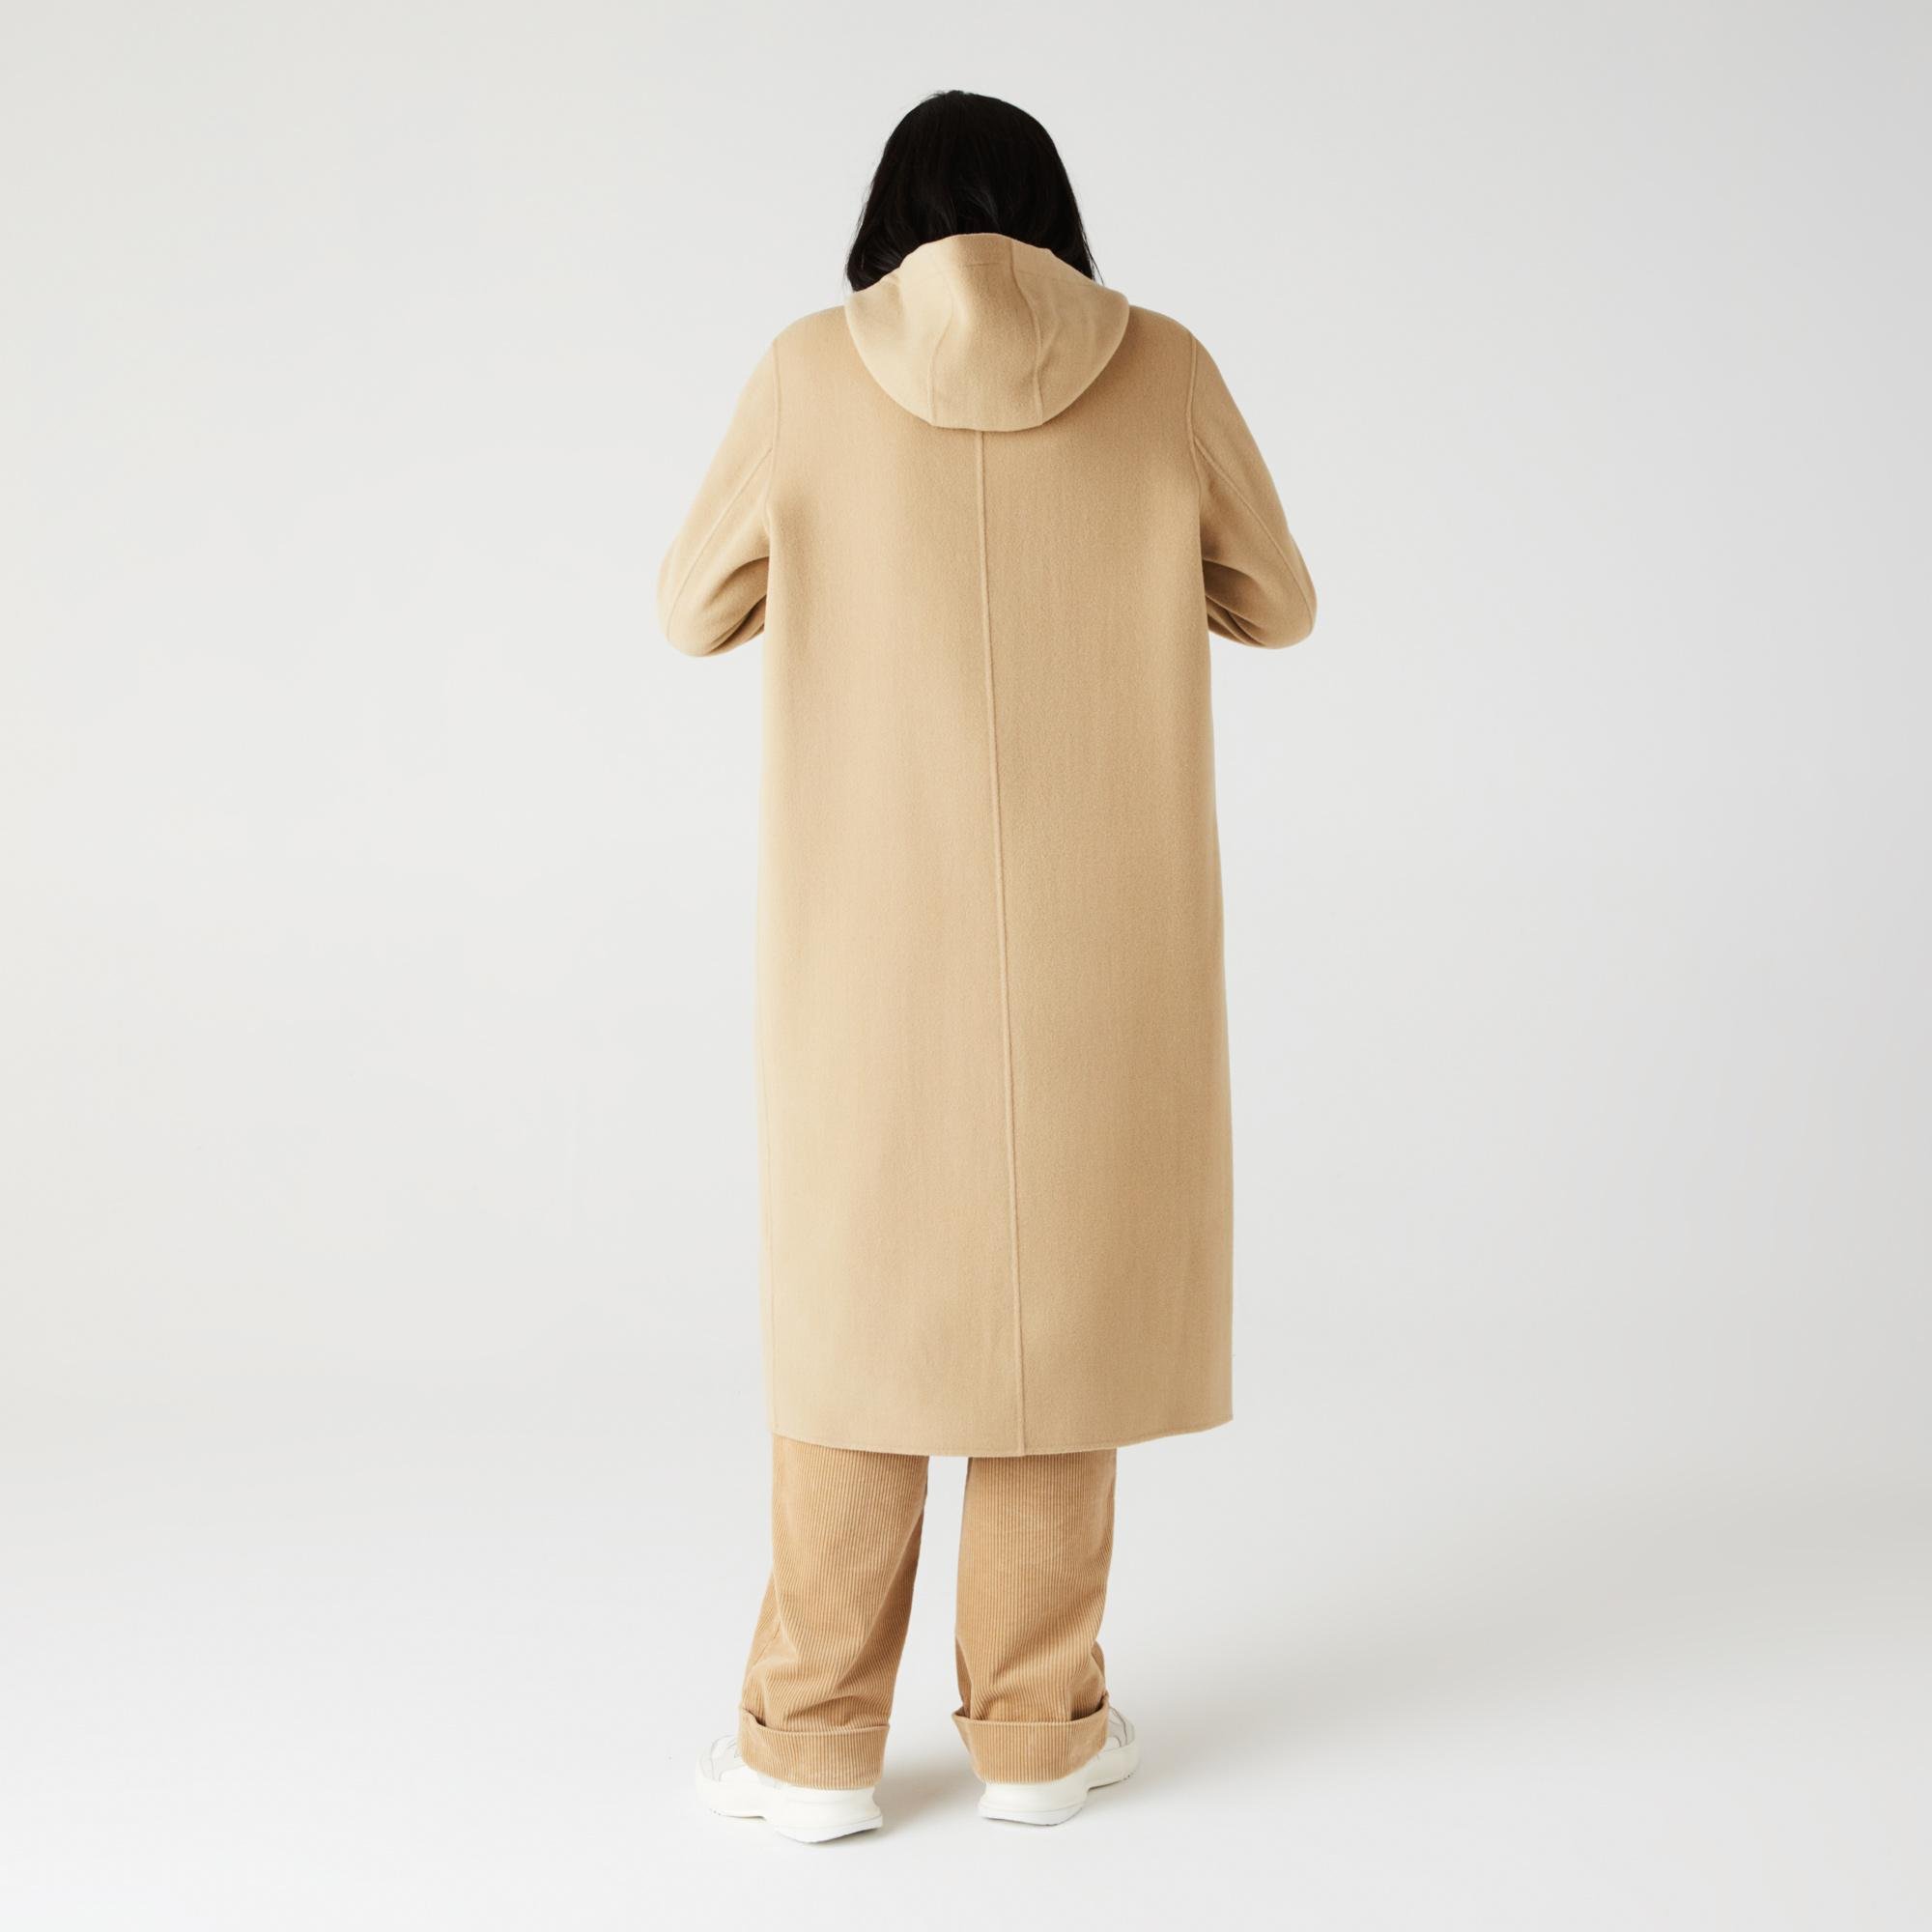 Lacoste Women's Hooded Zippered Long Wool Blend Coat